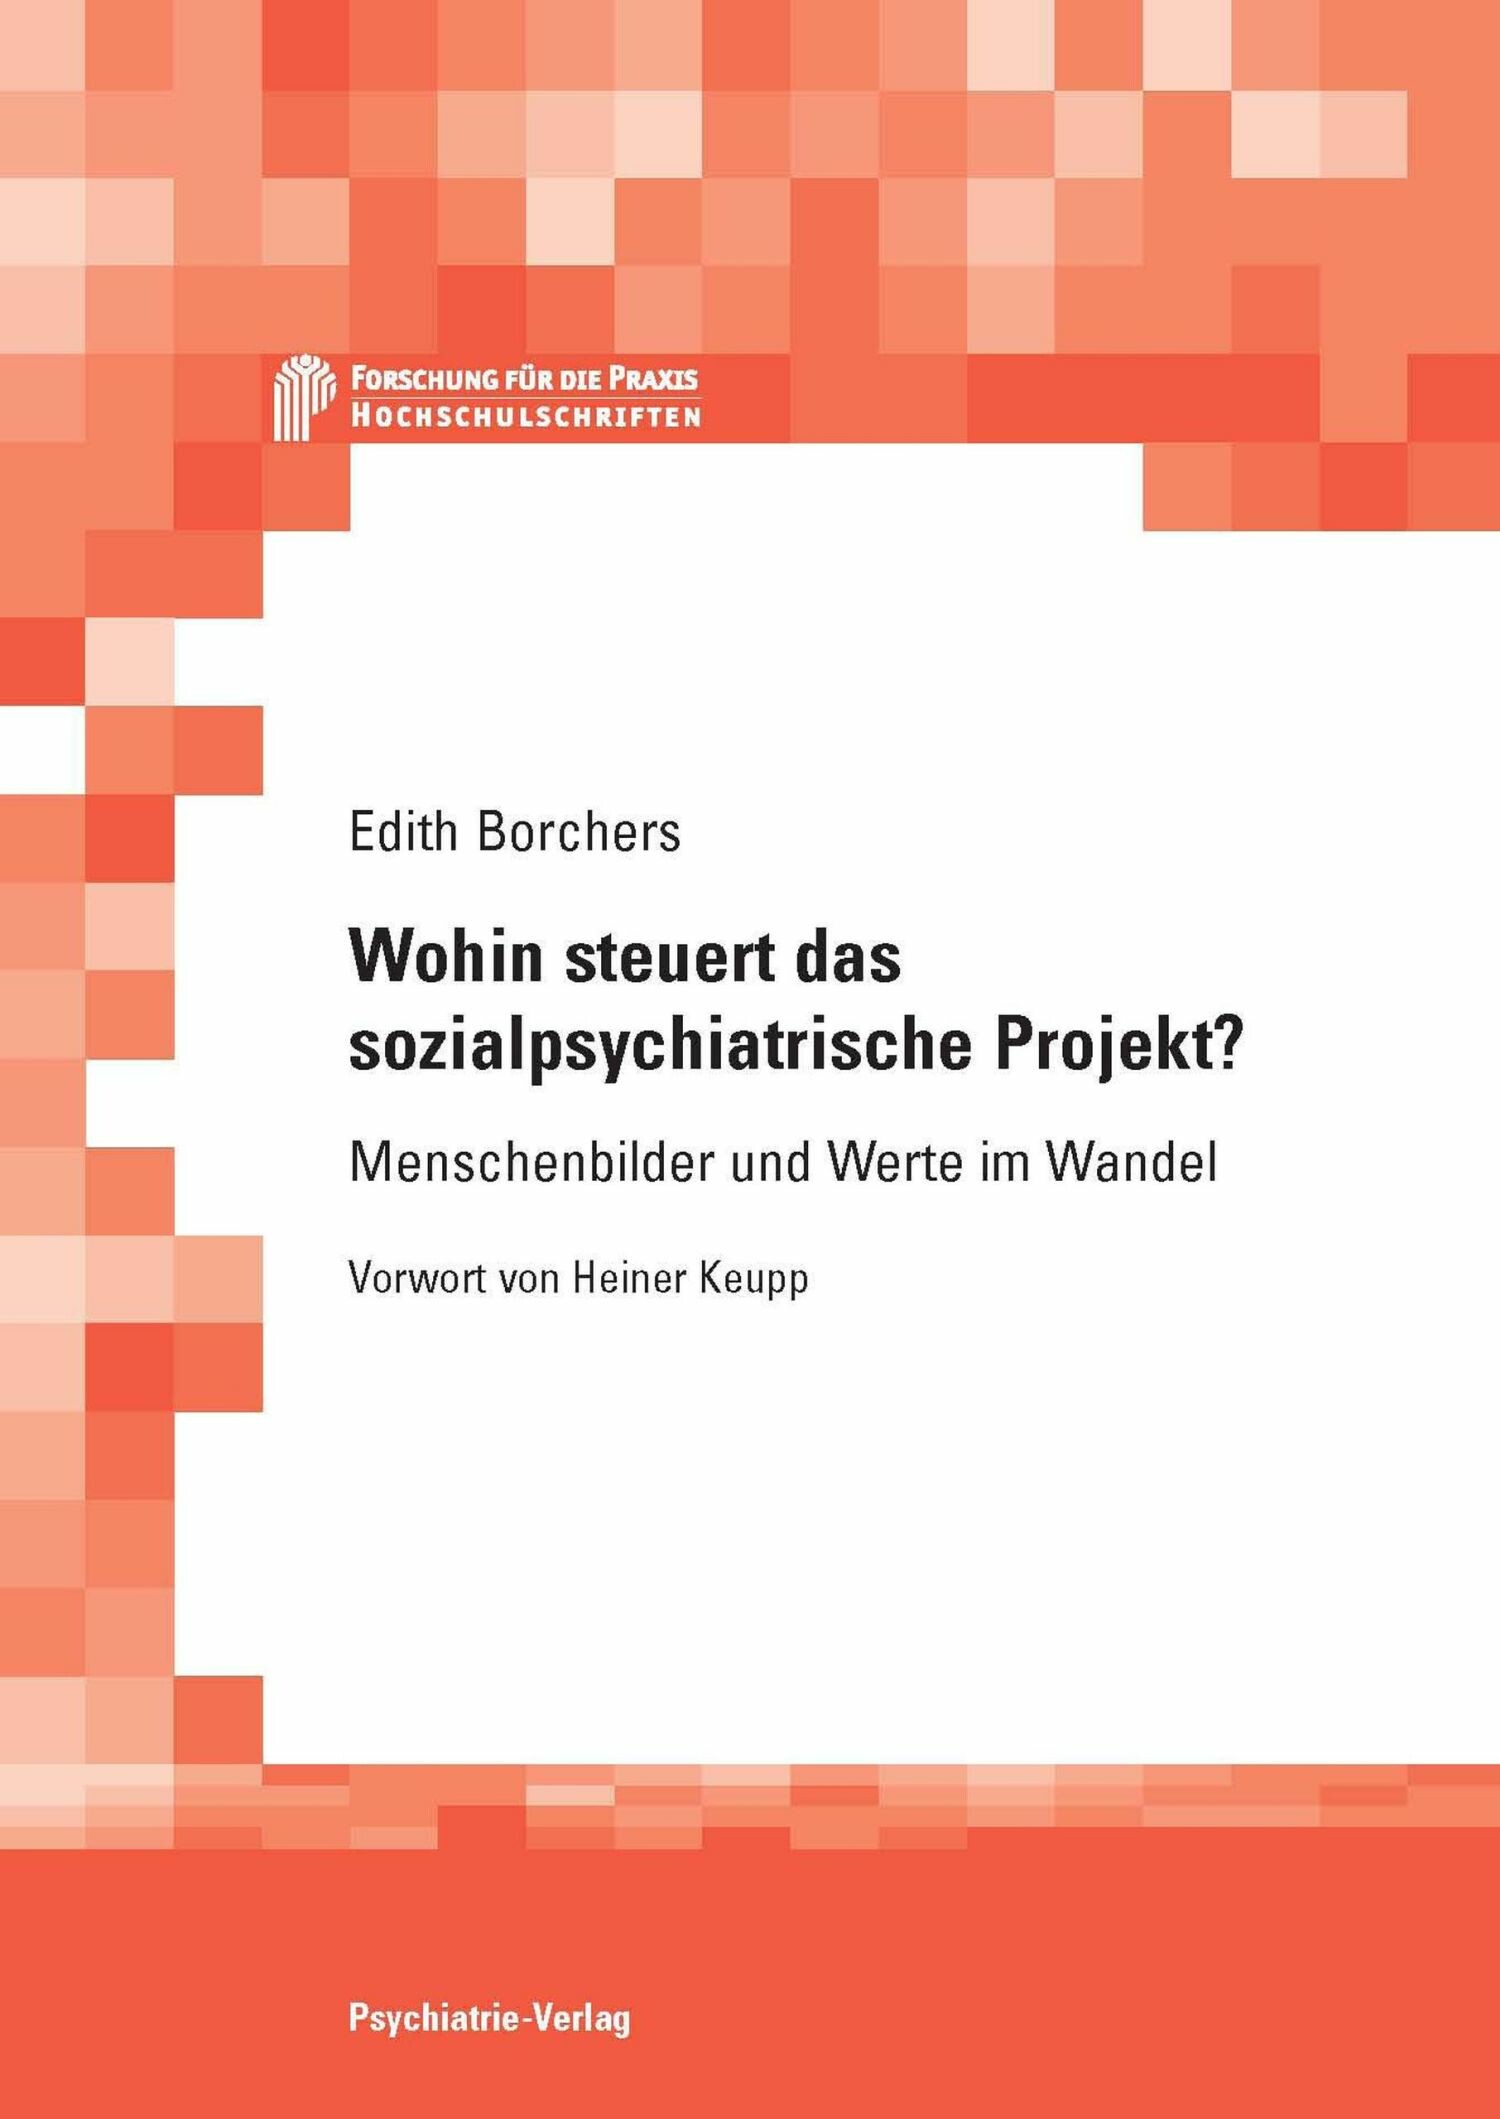 Wohin steuert das sozialpsychiatrische Projekt? (eBook als PDF)